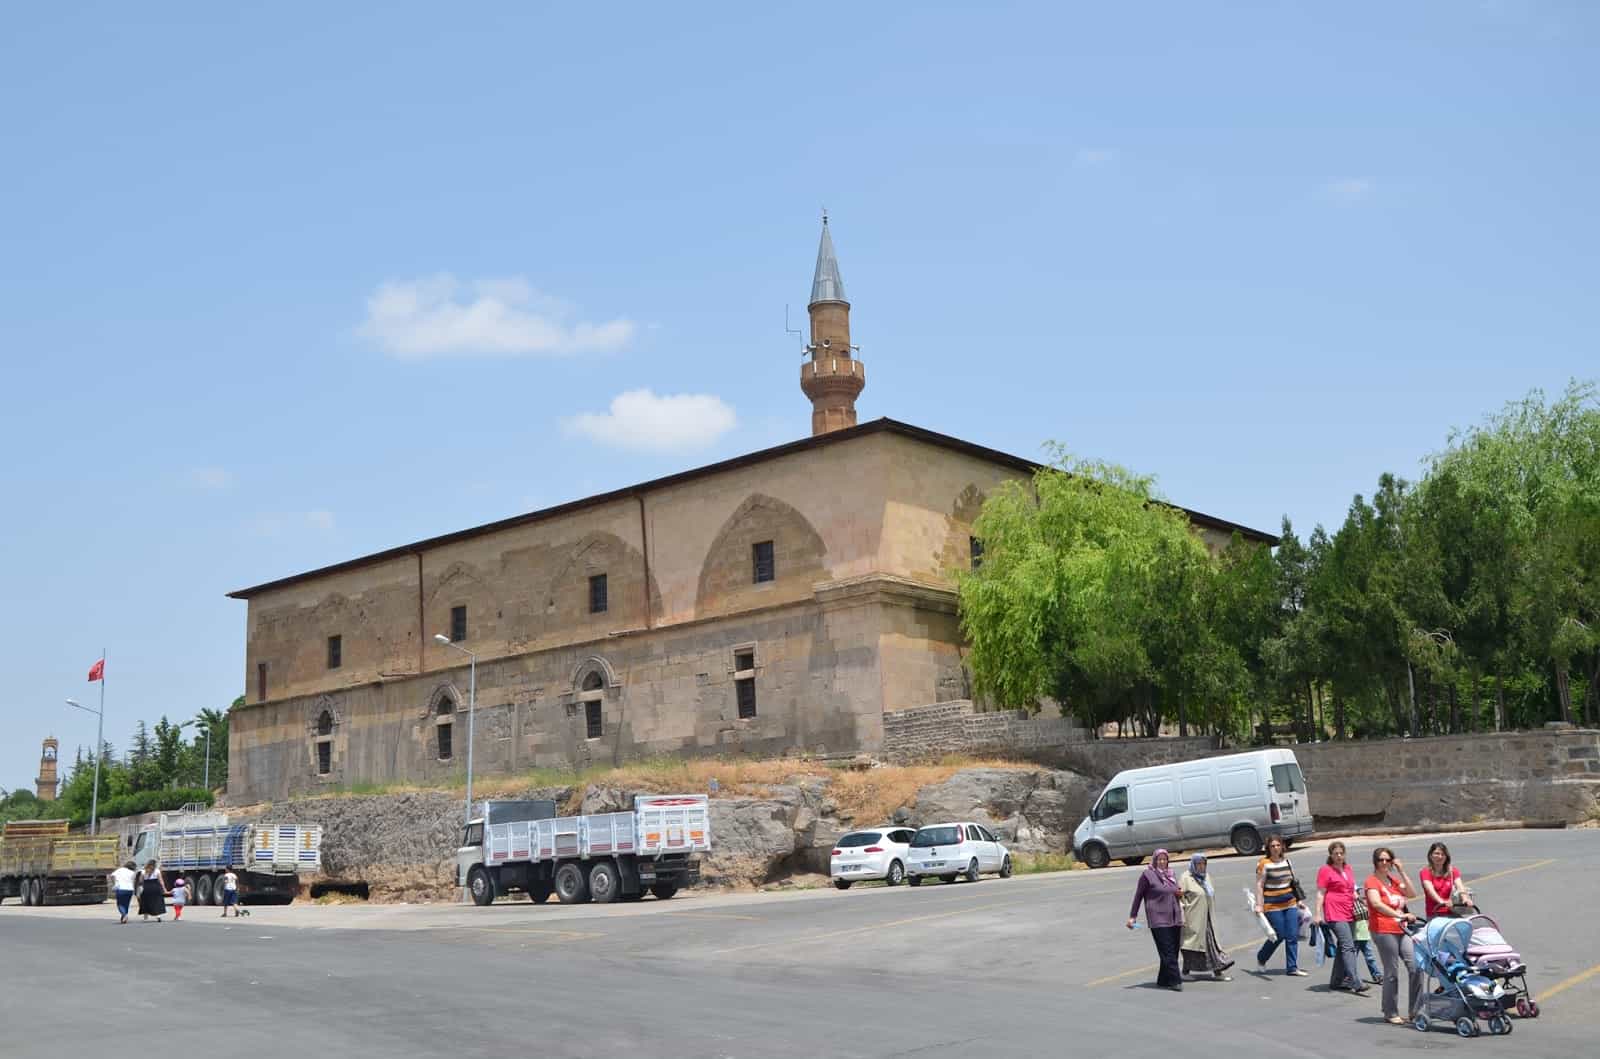 Sungur Bey Mosque in Niğde, Turkey